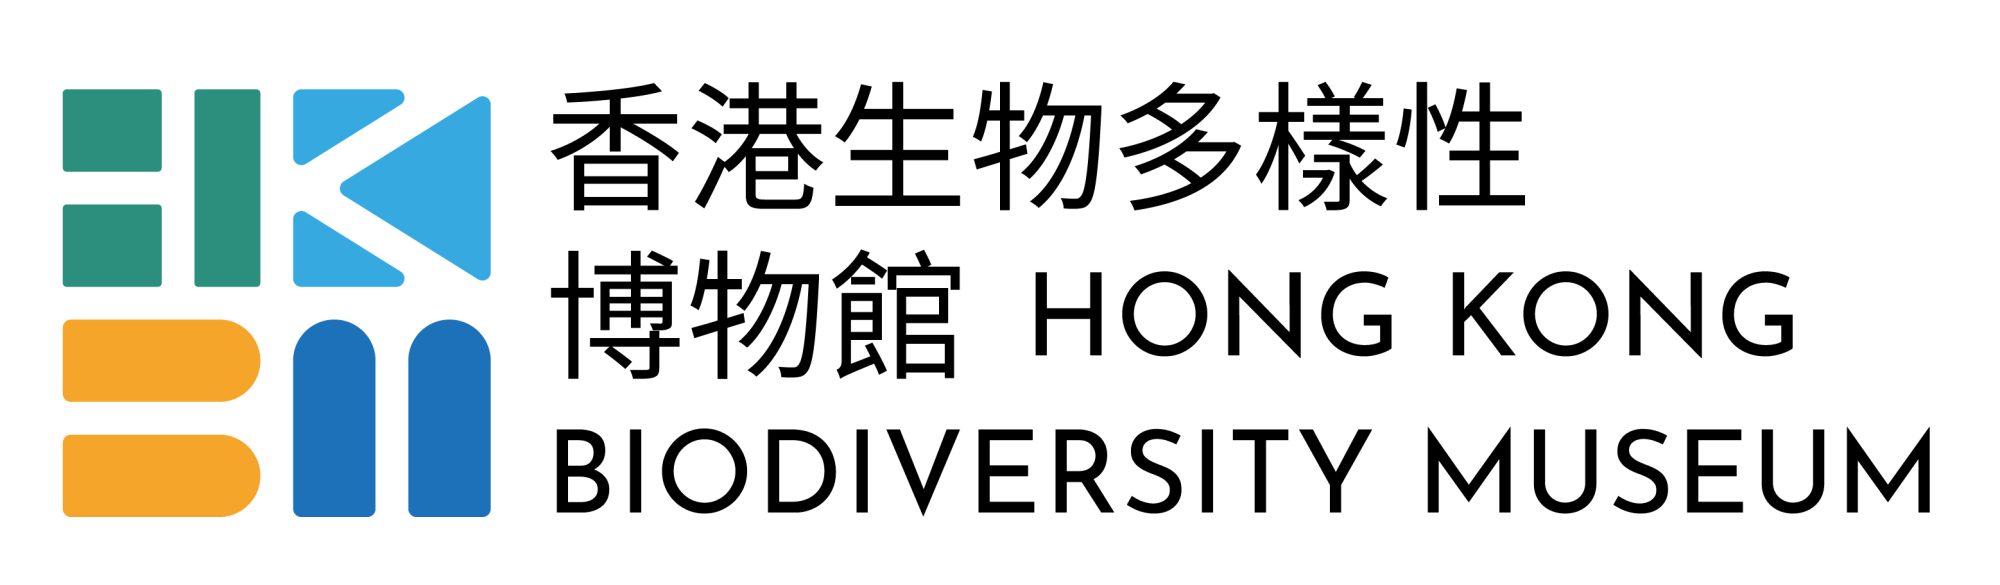 HKBM-logo-short